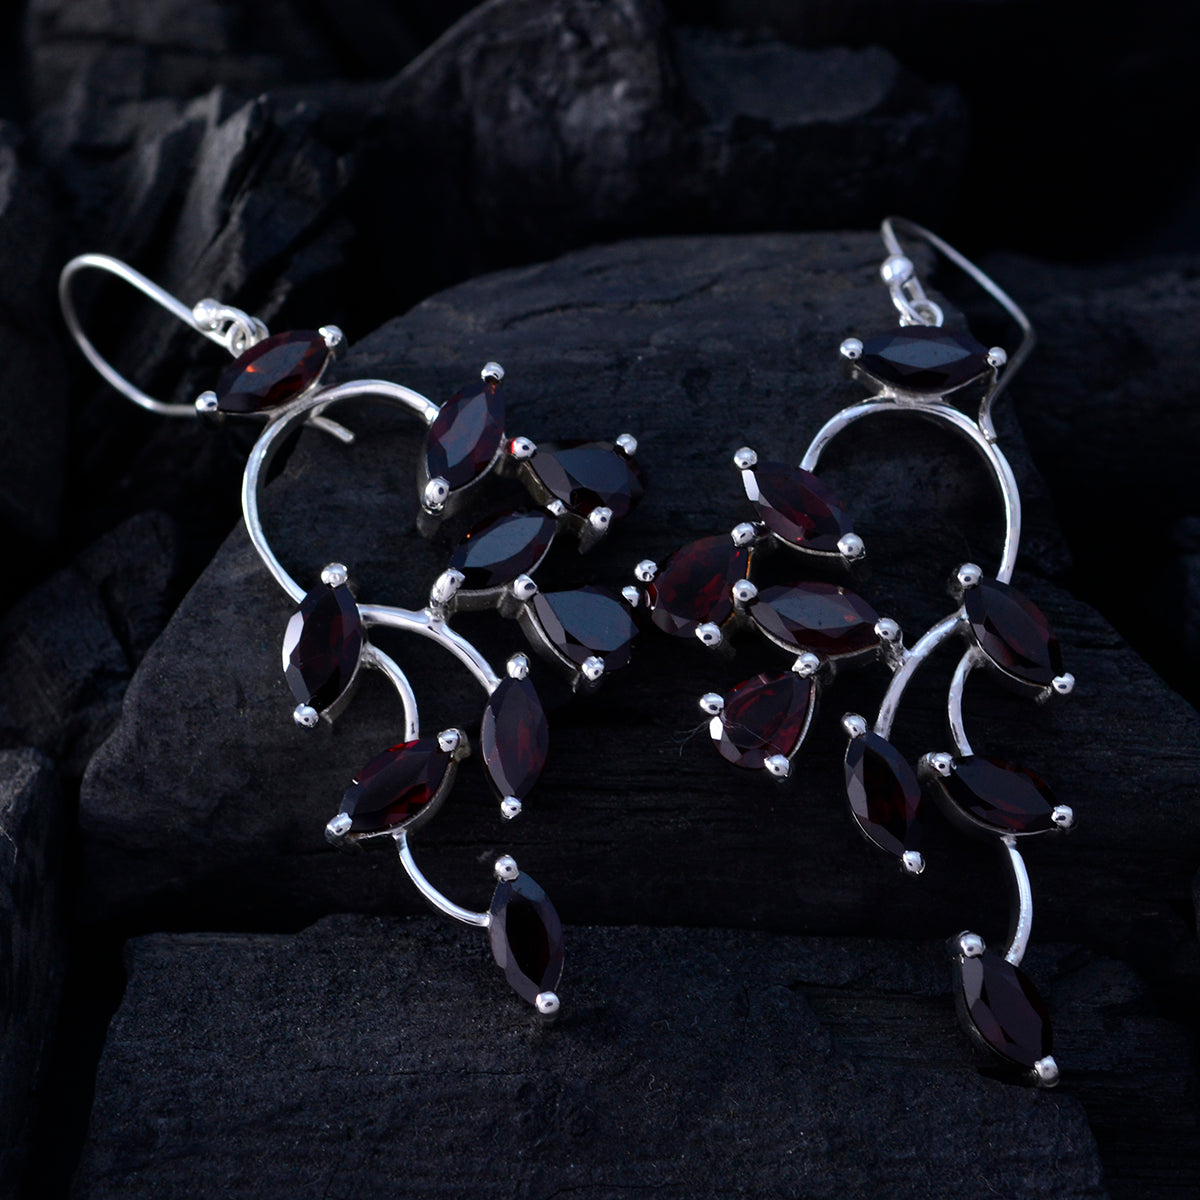 Riyo Good Gemstones Marquise Faceted Red Garnet Silver Earrings black Friday gift